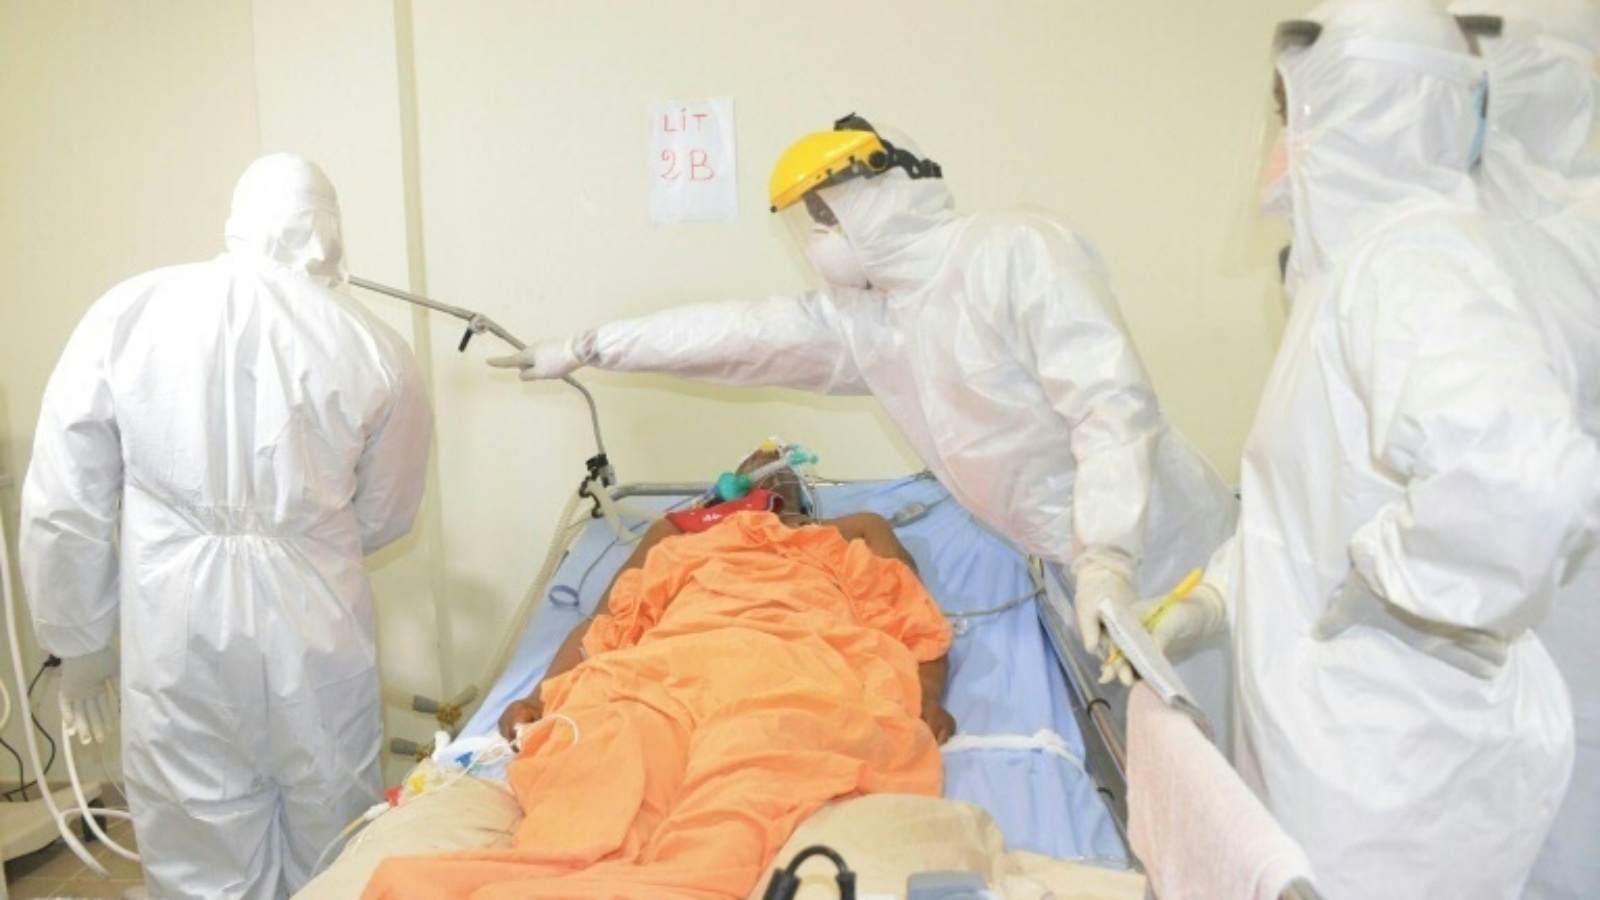 مخاطر العدوى: يحتاج العاملون في الرعاية الذين يعالجون مرضى ماربورغ أو الإيبولا إلى حماية الجسم بالكامل